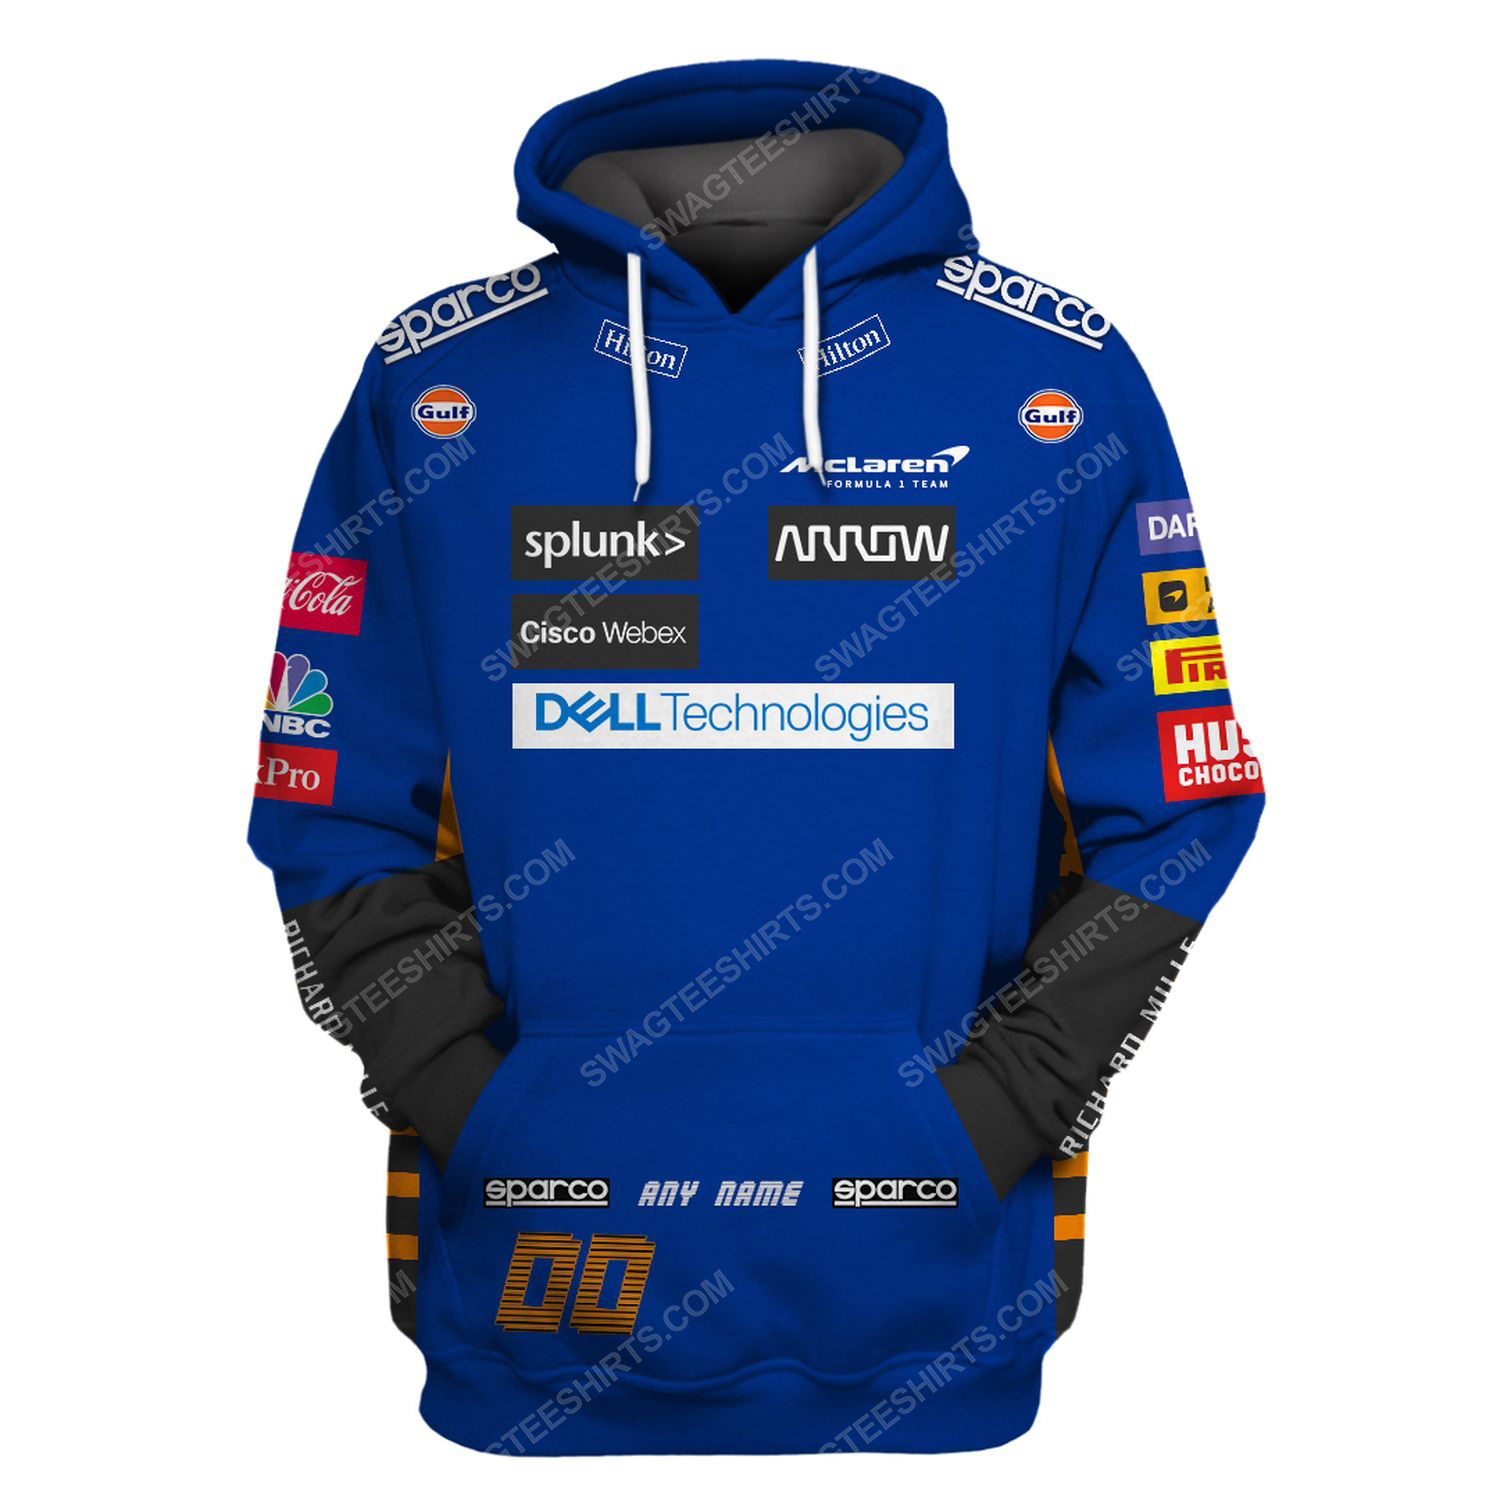 Dell technologies racing team motorsport full printing hoodie